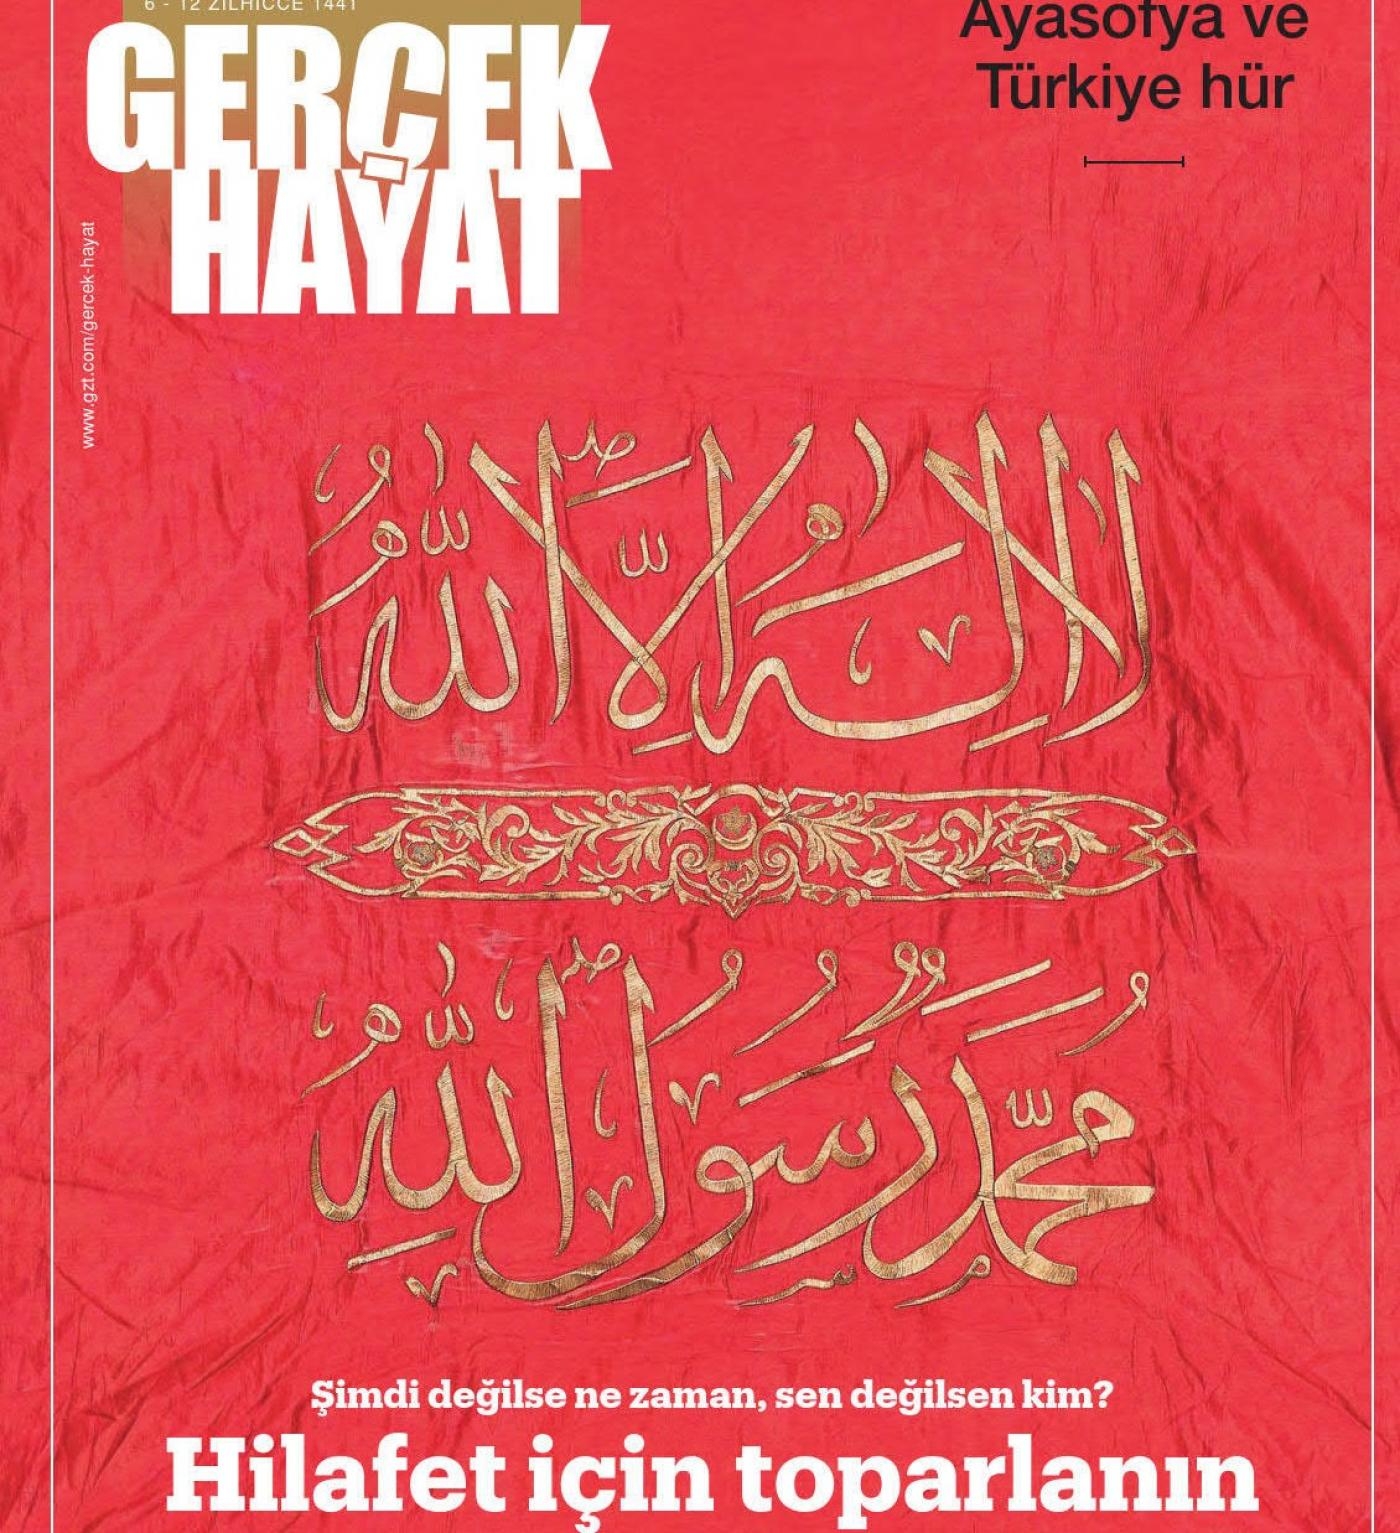 L’appel lancé par la une de Gerçek Hayat : « Rassemblez-vous pour le califat. Si ce n’est pas maintenant, alors quand ? Si ce n’est pas vous, alors qui ? » (capture d’écran)